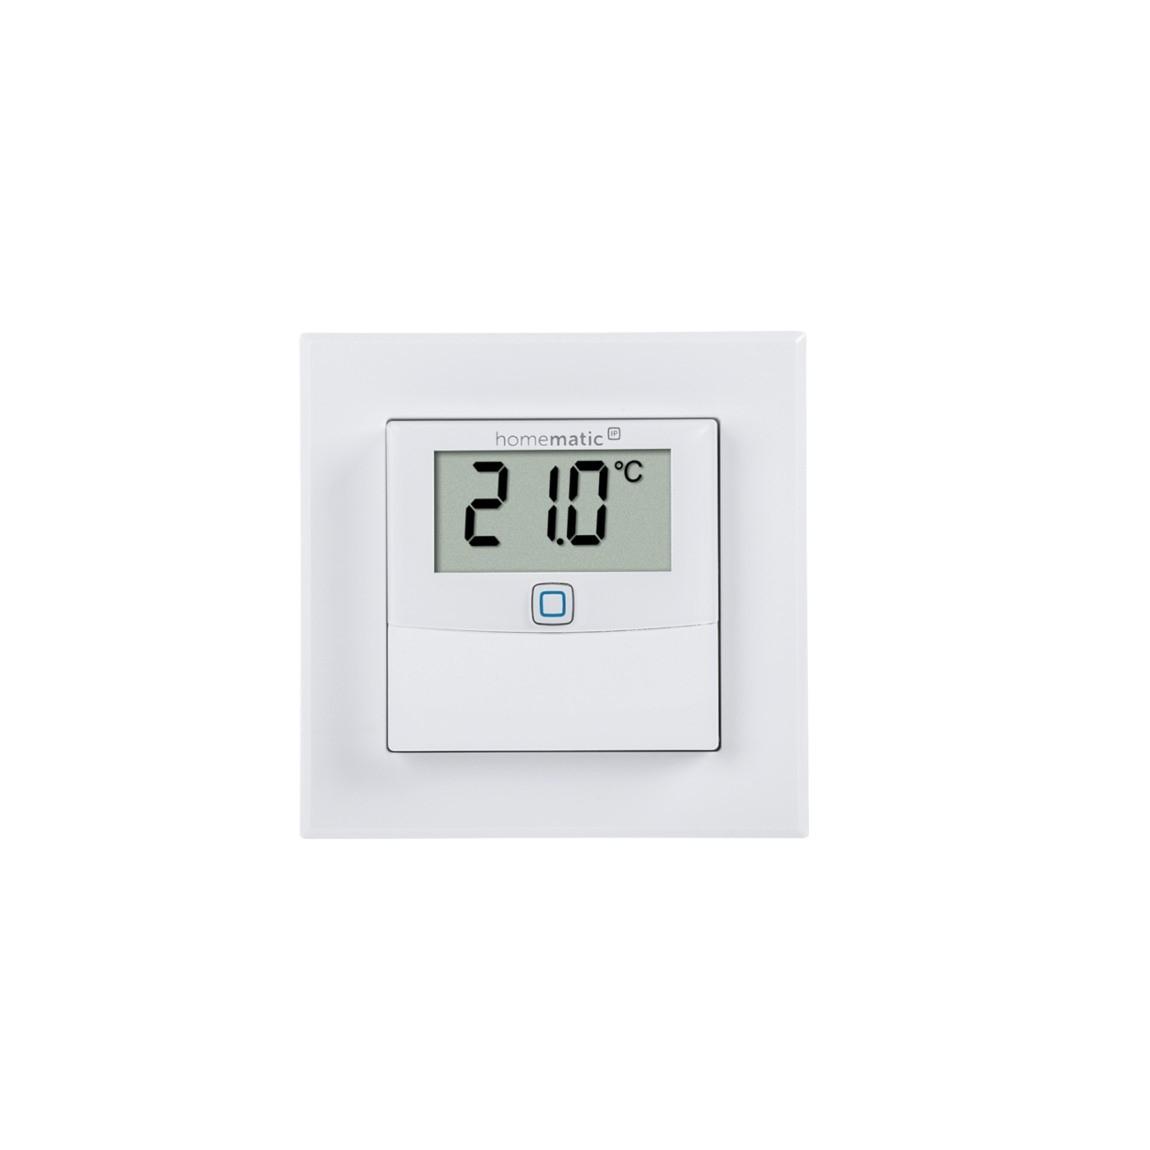 Homematic IP Temperatur- und Luftfeuchtigkeitssensor mit Display – innen in weiß front Ansicht